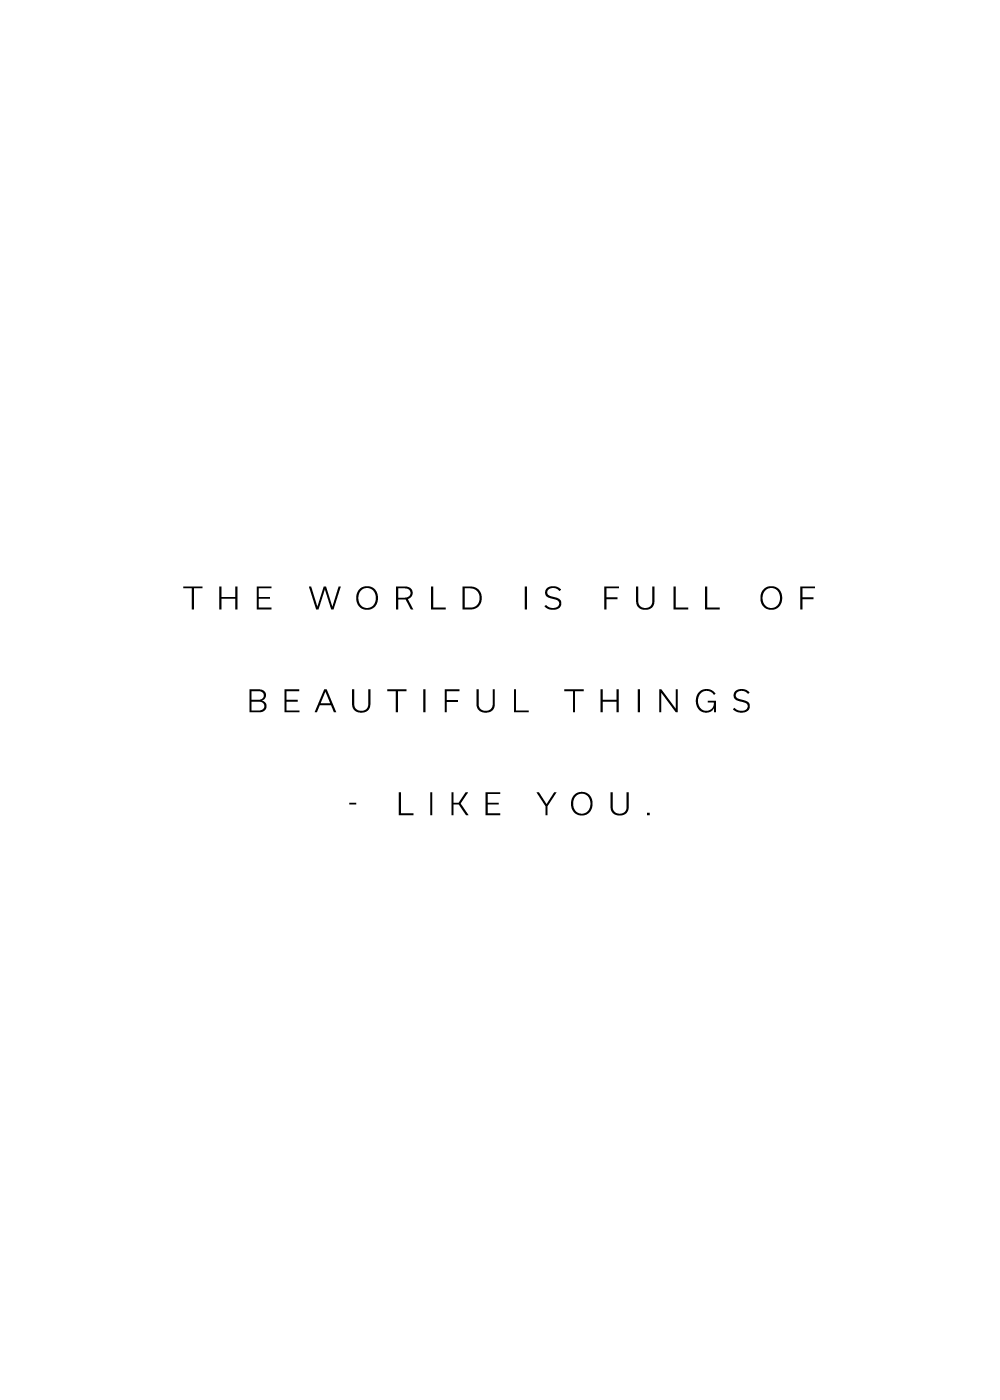 "The world is full of beautiful things - like you" citatplakat